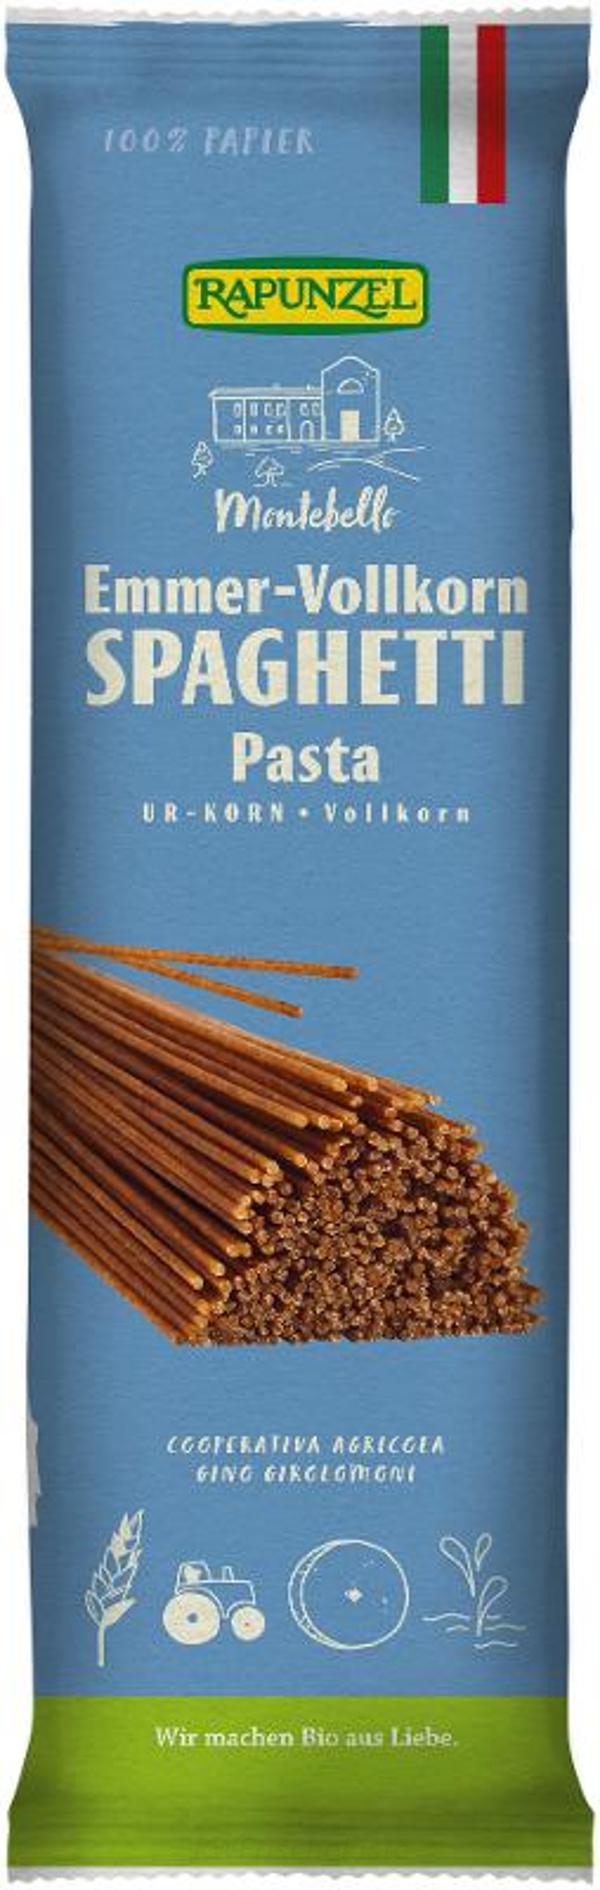 Produktfoto zu Emmer-Spaghetti Vollkorn